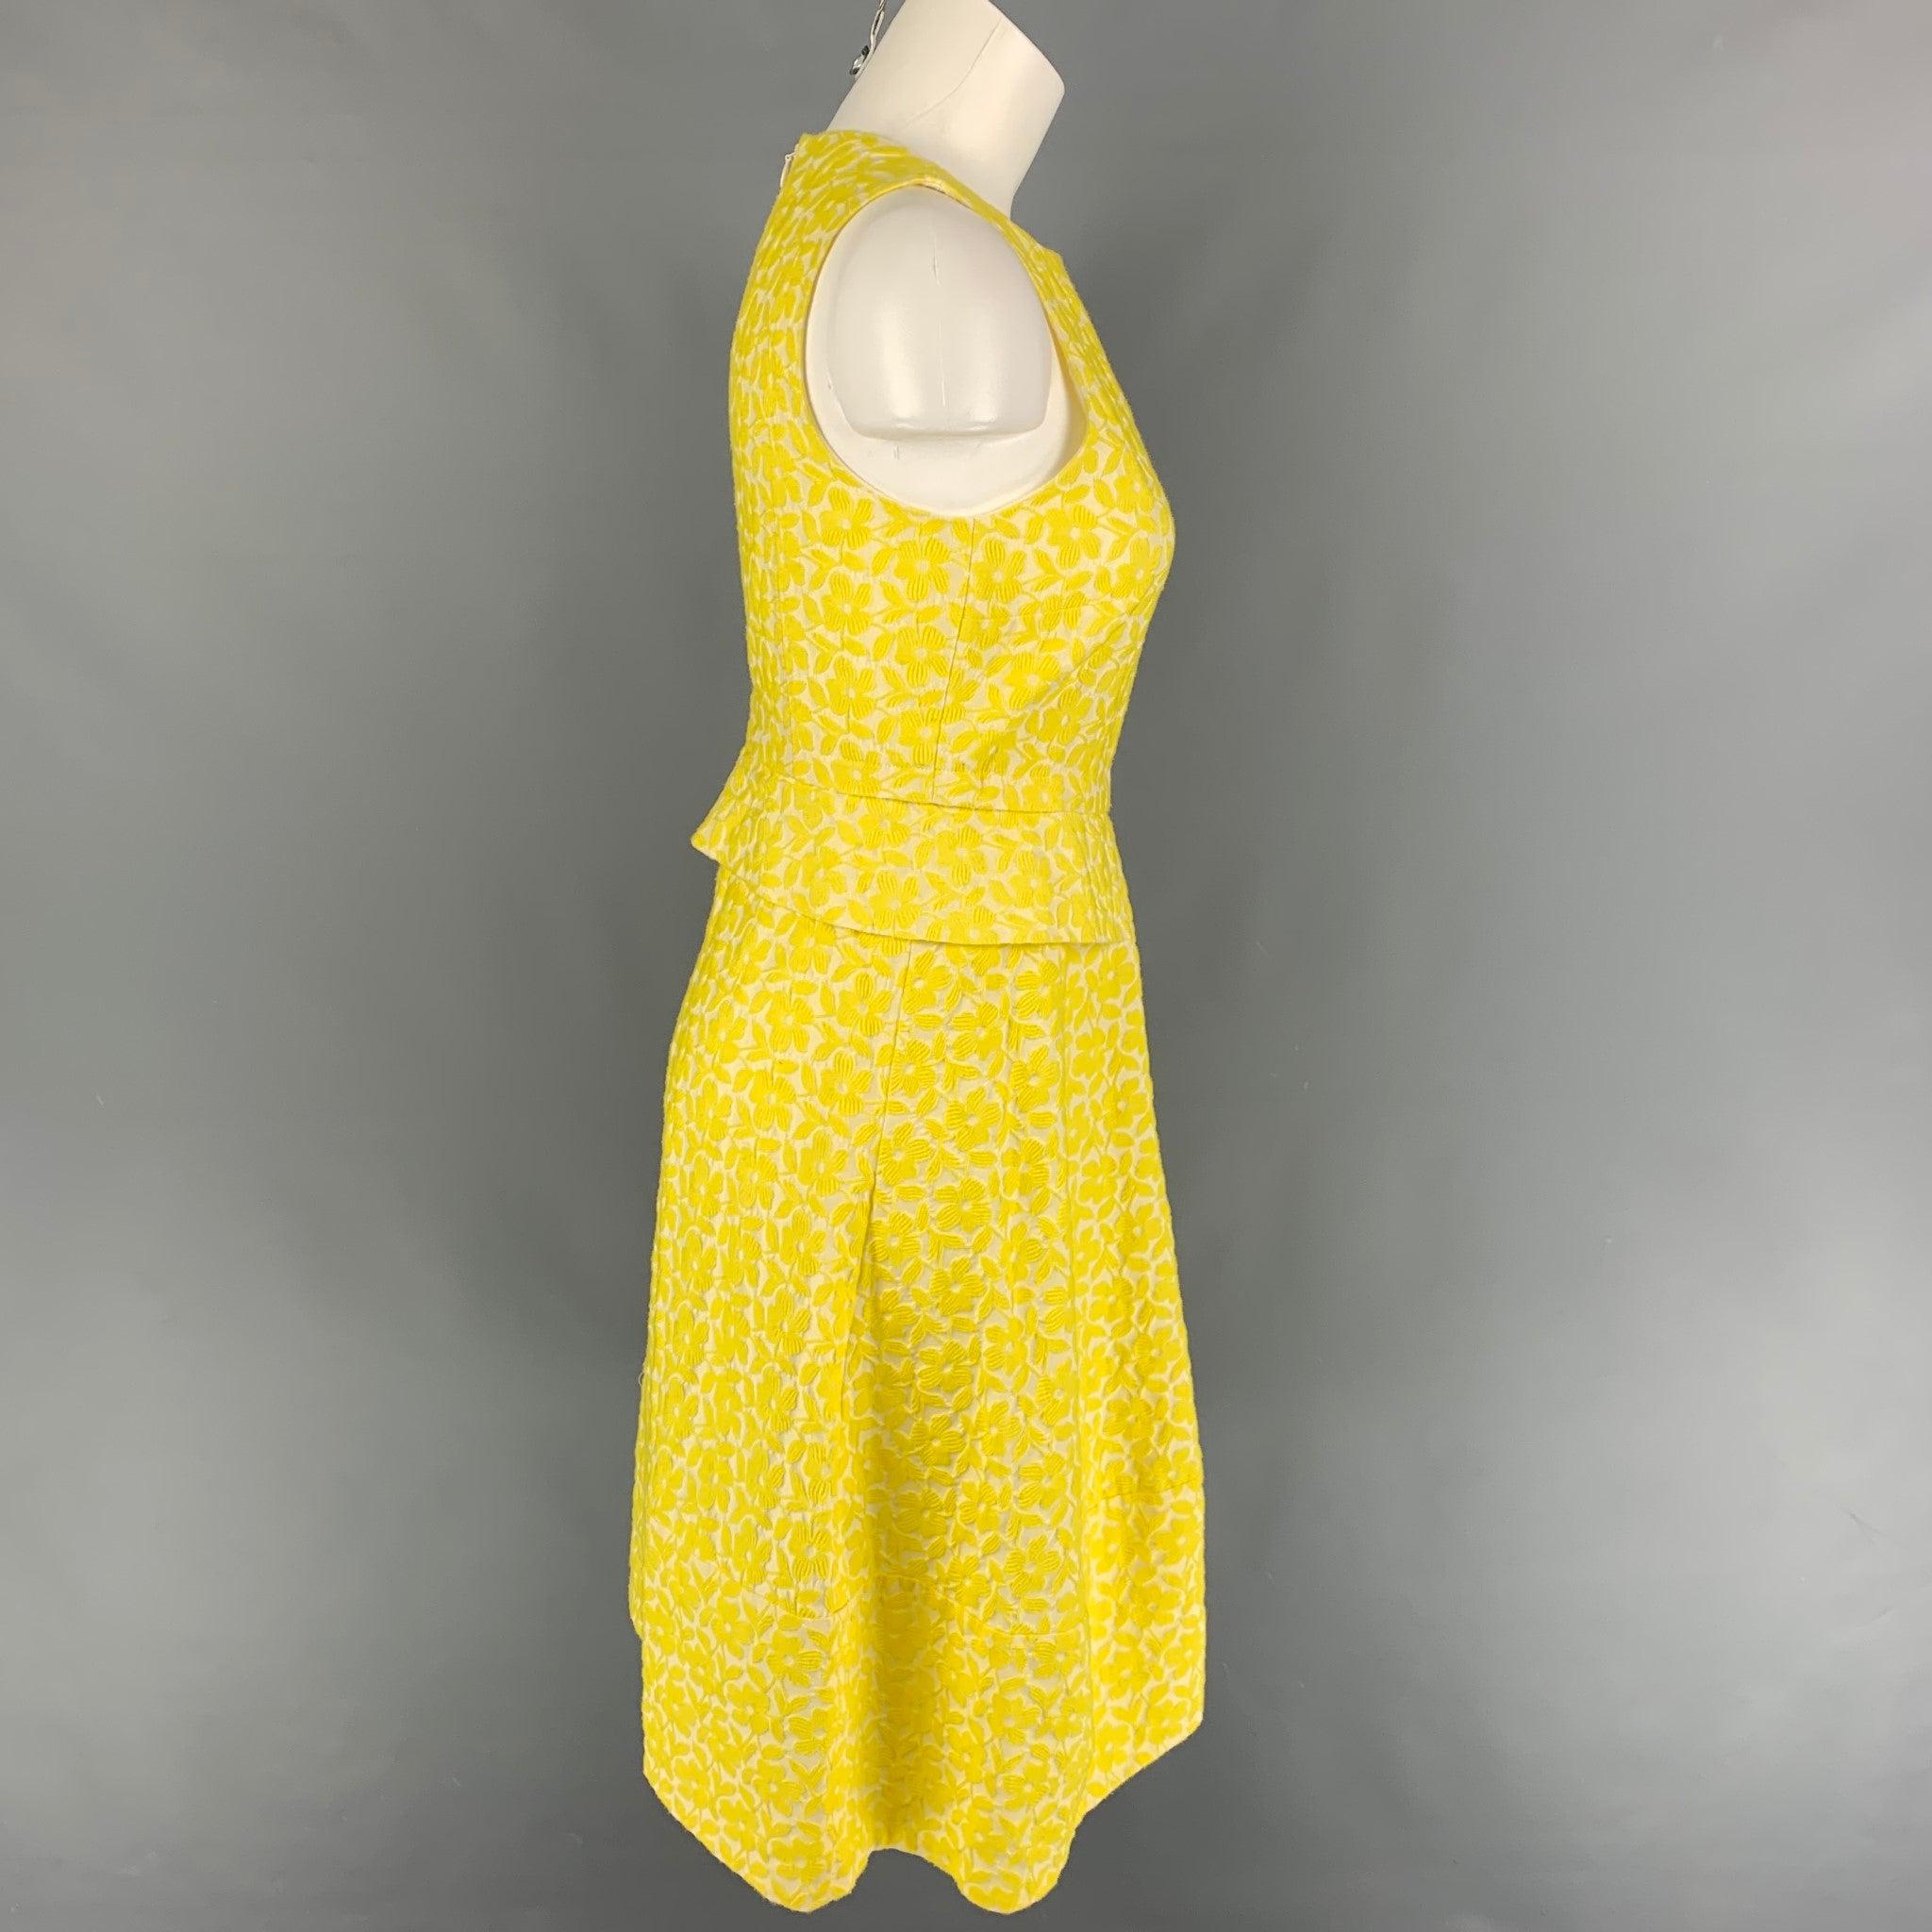 JIL SANDER Kleid aus einer gelb-weißen Jacquard-Baumwollmischung, in A-Linie, ärmellos, mit Details auf der Vorderseite und einem Reißverschluss auf der Rückseite. Hergestellt in Italien.
Sehr gut
Gebrauchtes Zustand. 

Markiert:   34 

Abmessungen: